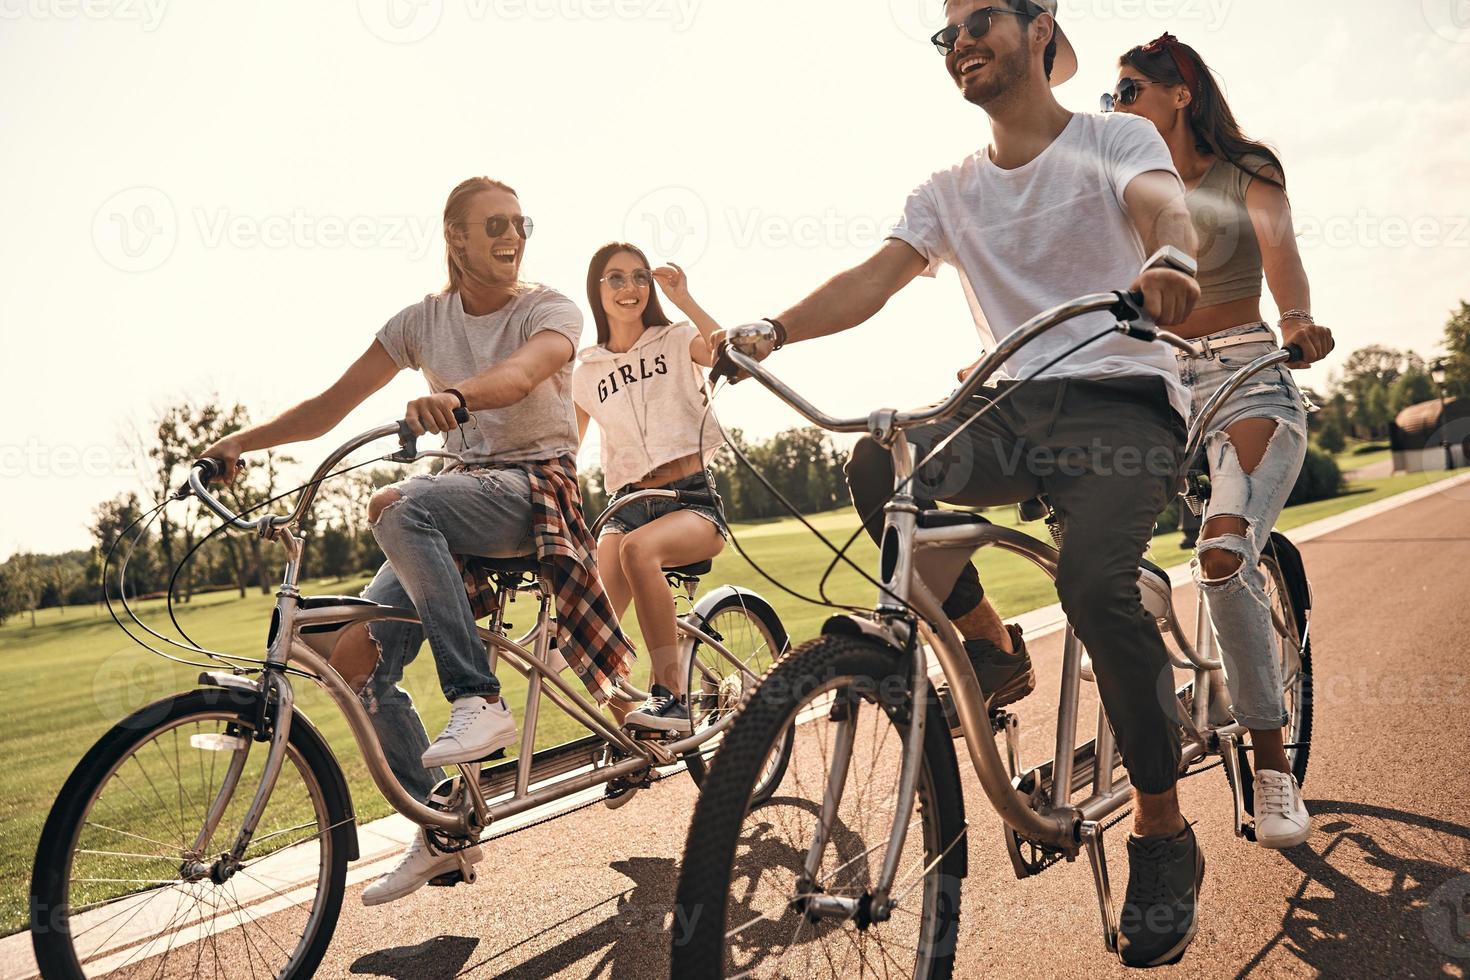 día de verano sin preocupaciones. grupo de jóvenes felices con ropa informal sonriendo mientras andan en bicicleta juntos al aire libre foto